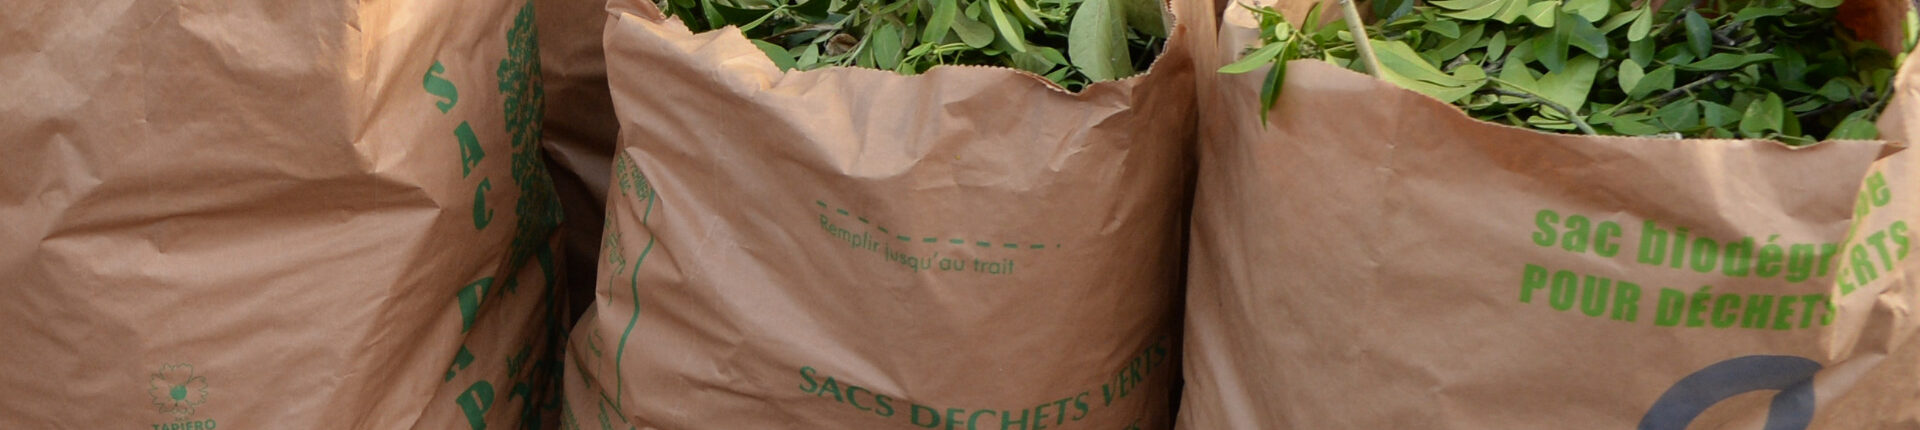 Depuis le 1er juin, les sacs à déchets verts sont disponibles à l’accueil de l’Hôtel de ville